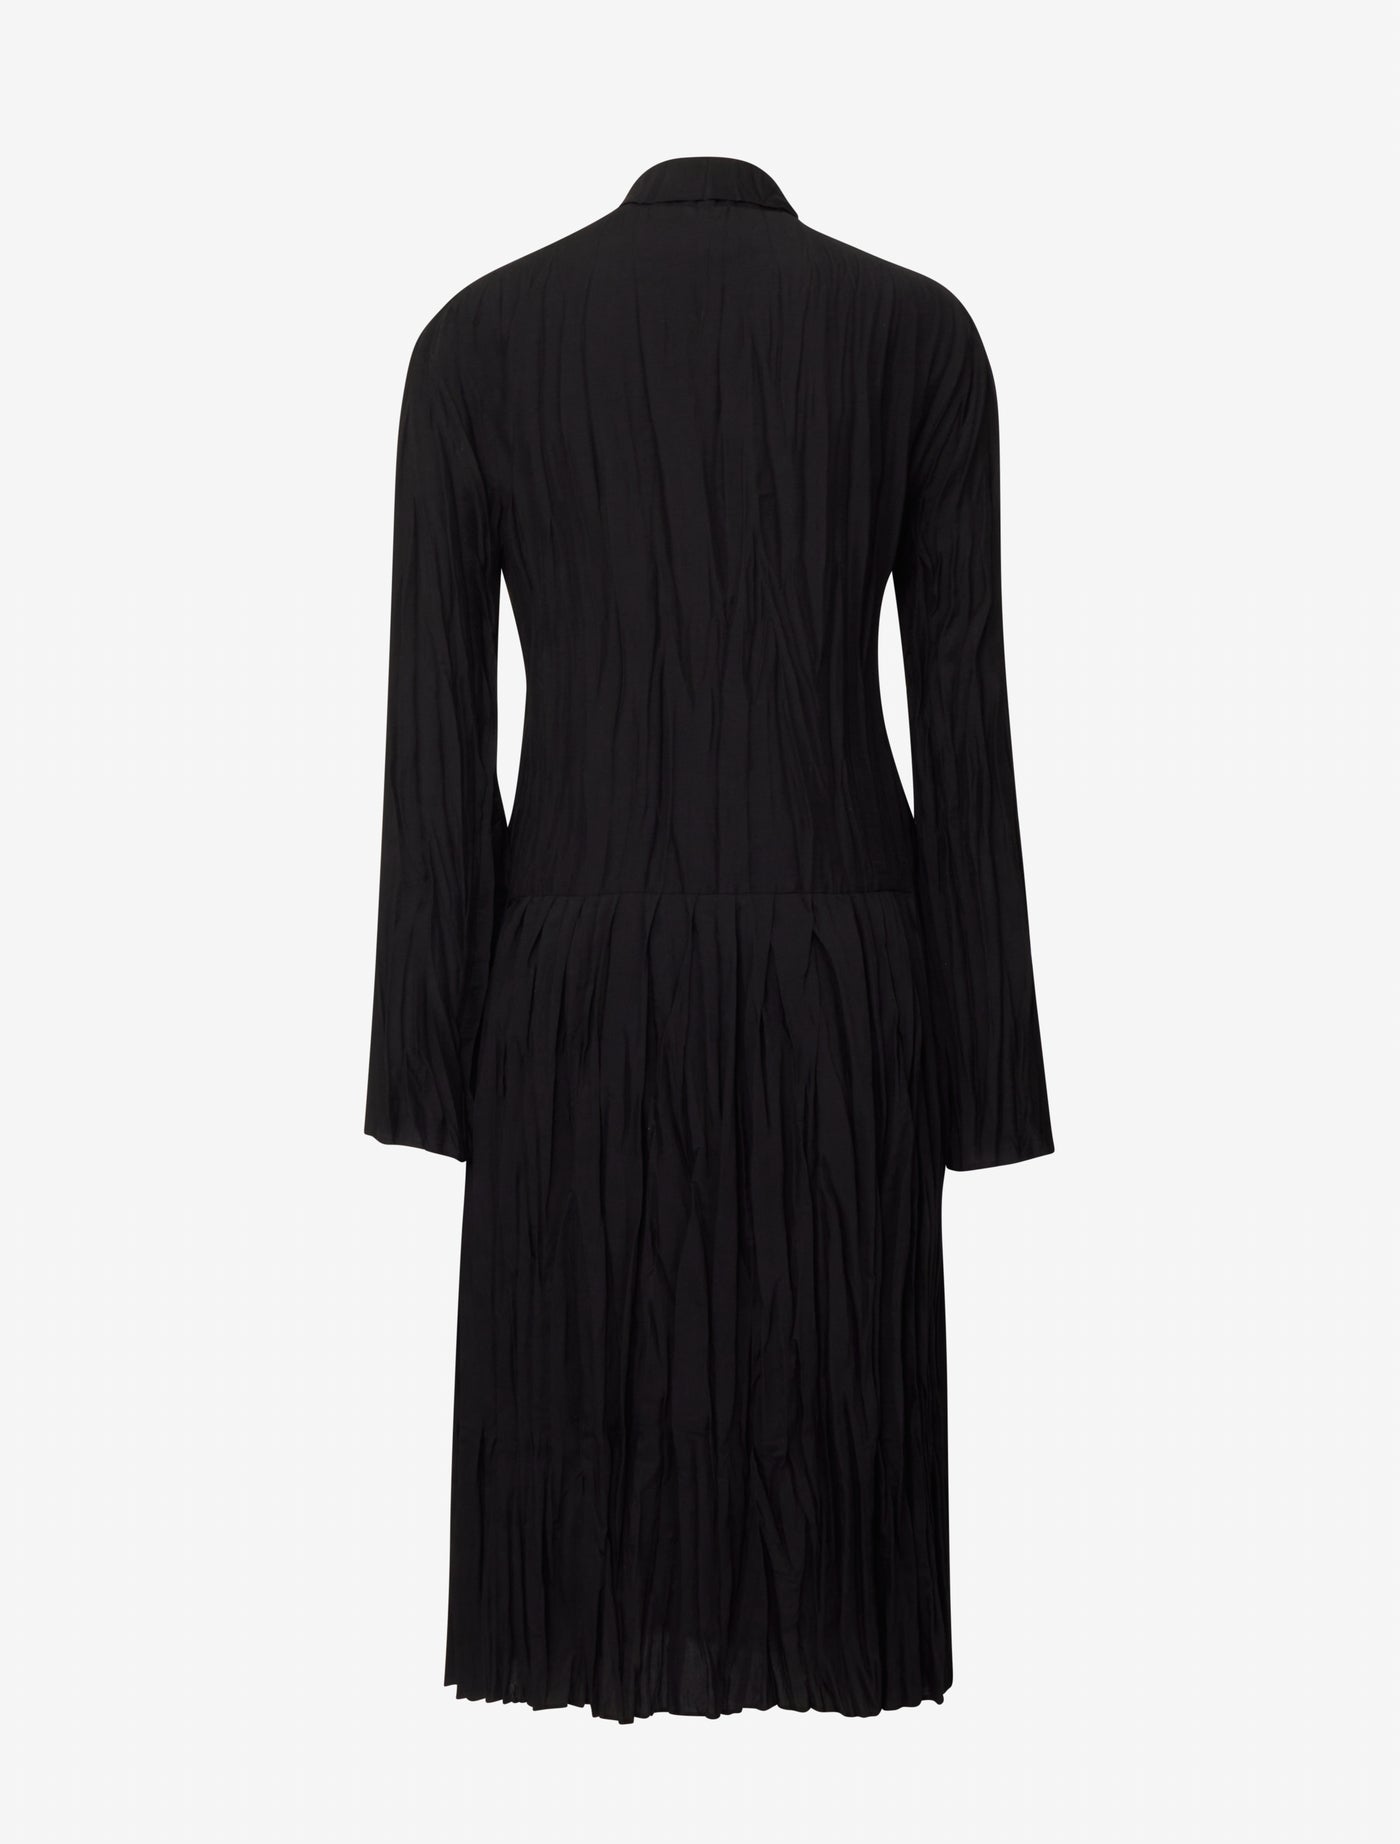 Albers Dress in Black